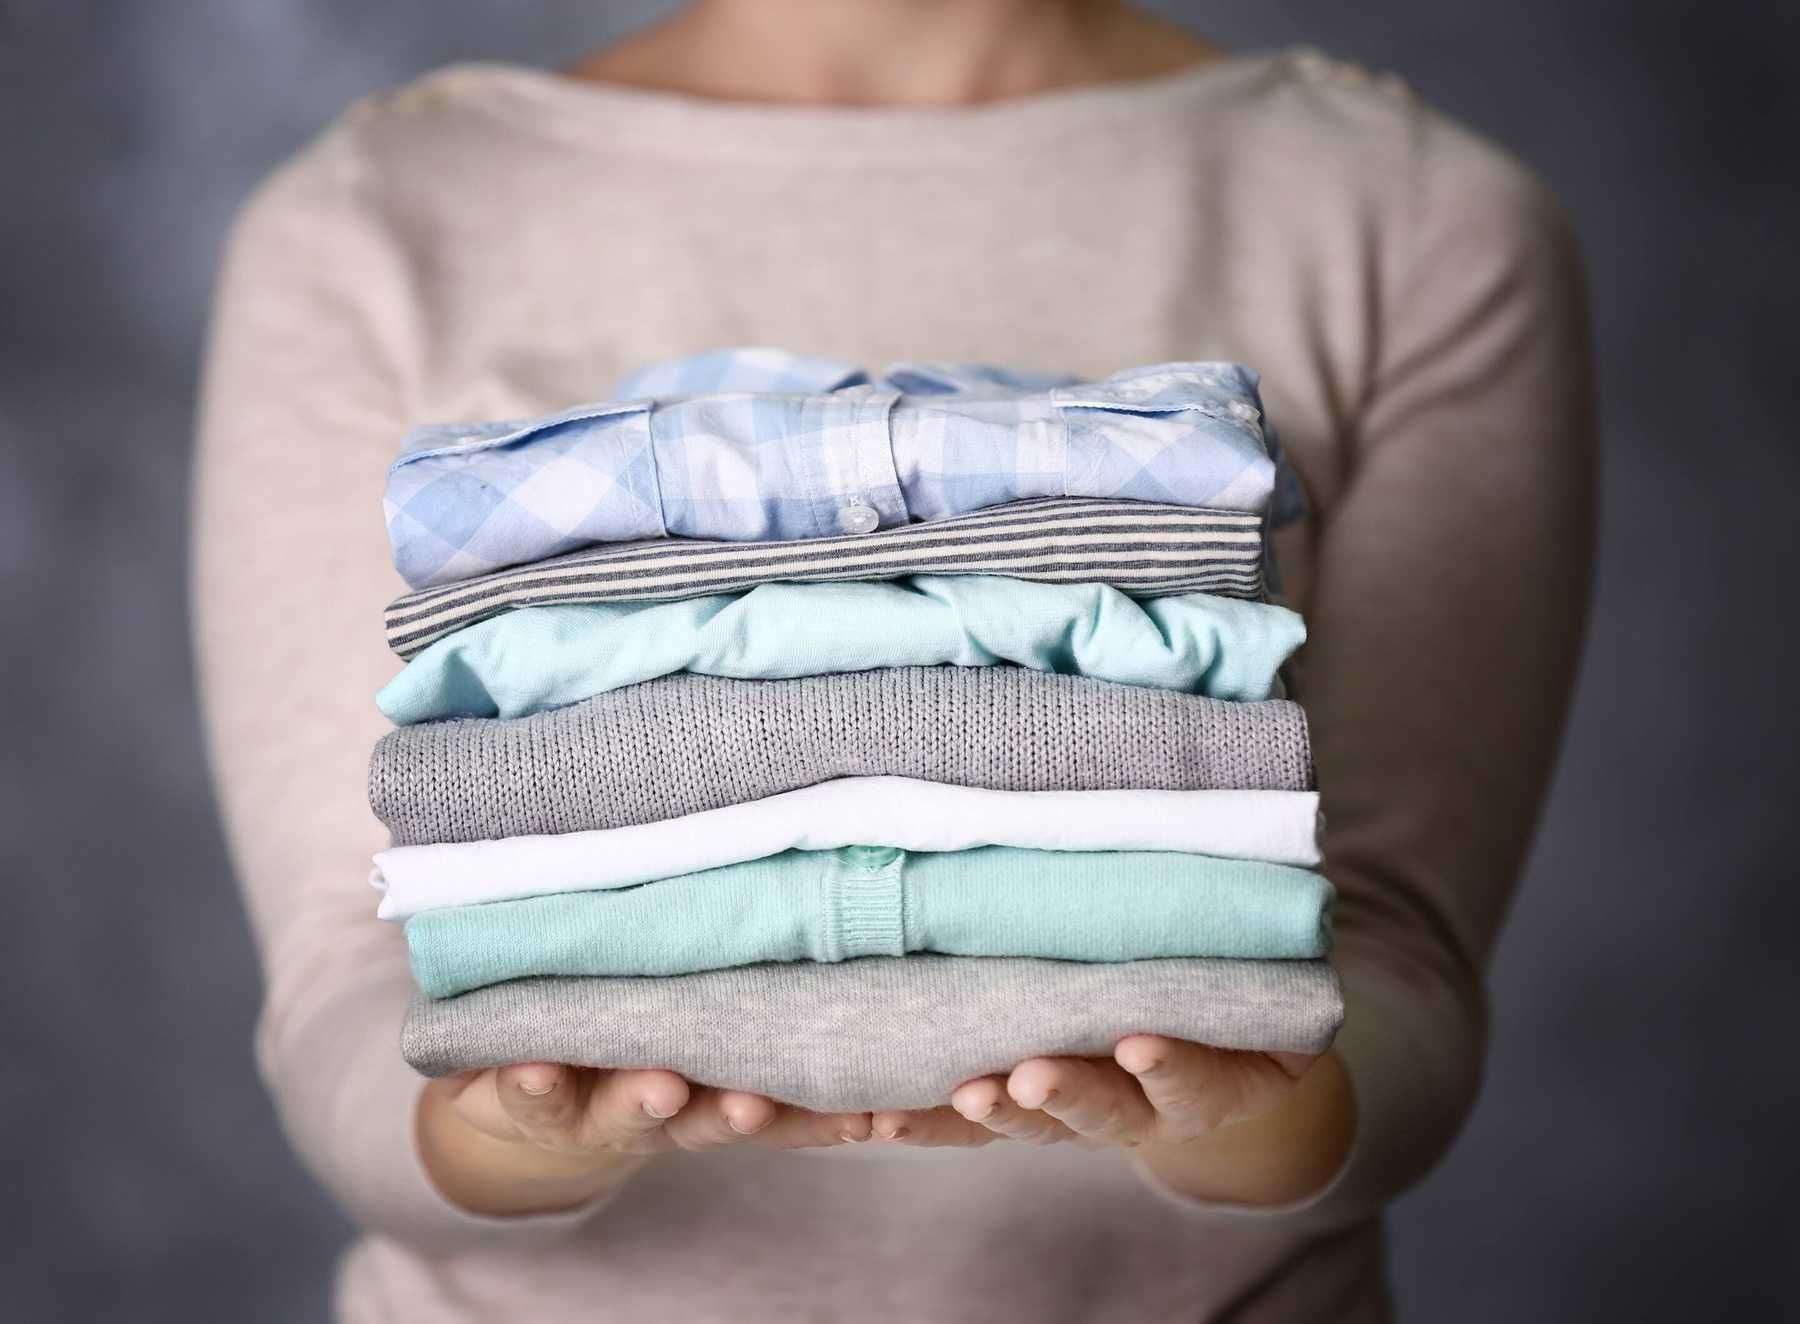 Giặt sấy thường xuyên khiến đồ nhanh hư hỏng | Cleanipedia